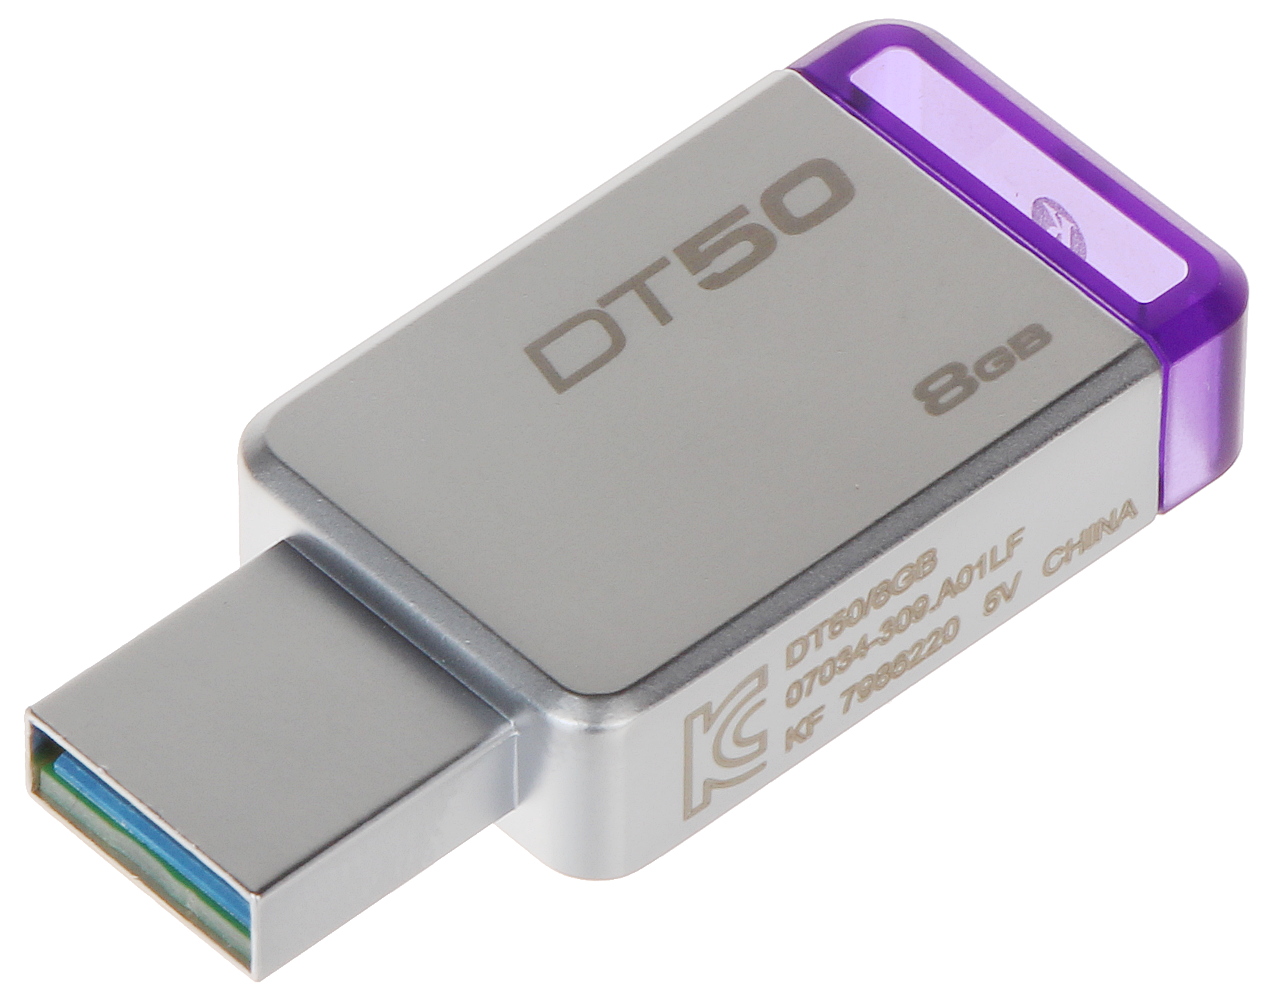 FLASH DRIVE USB 3.0 FD-8/DT50-KING 8 GB USB 3.1/3.0 KI... - Flash Drives -  Delta